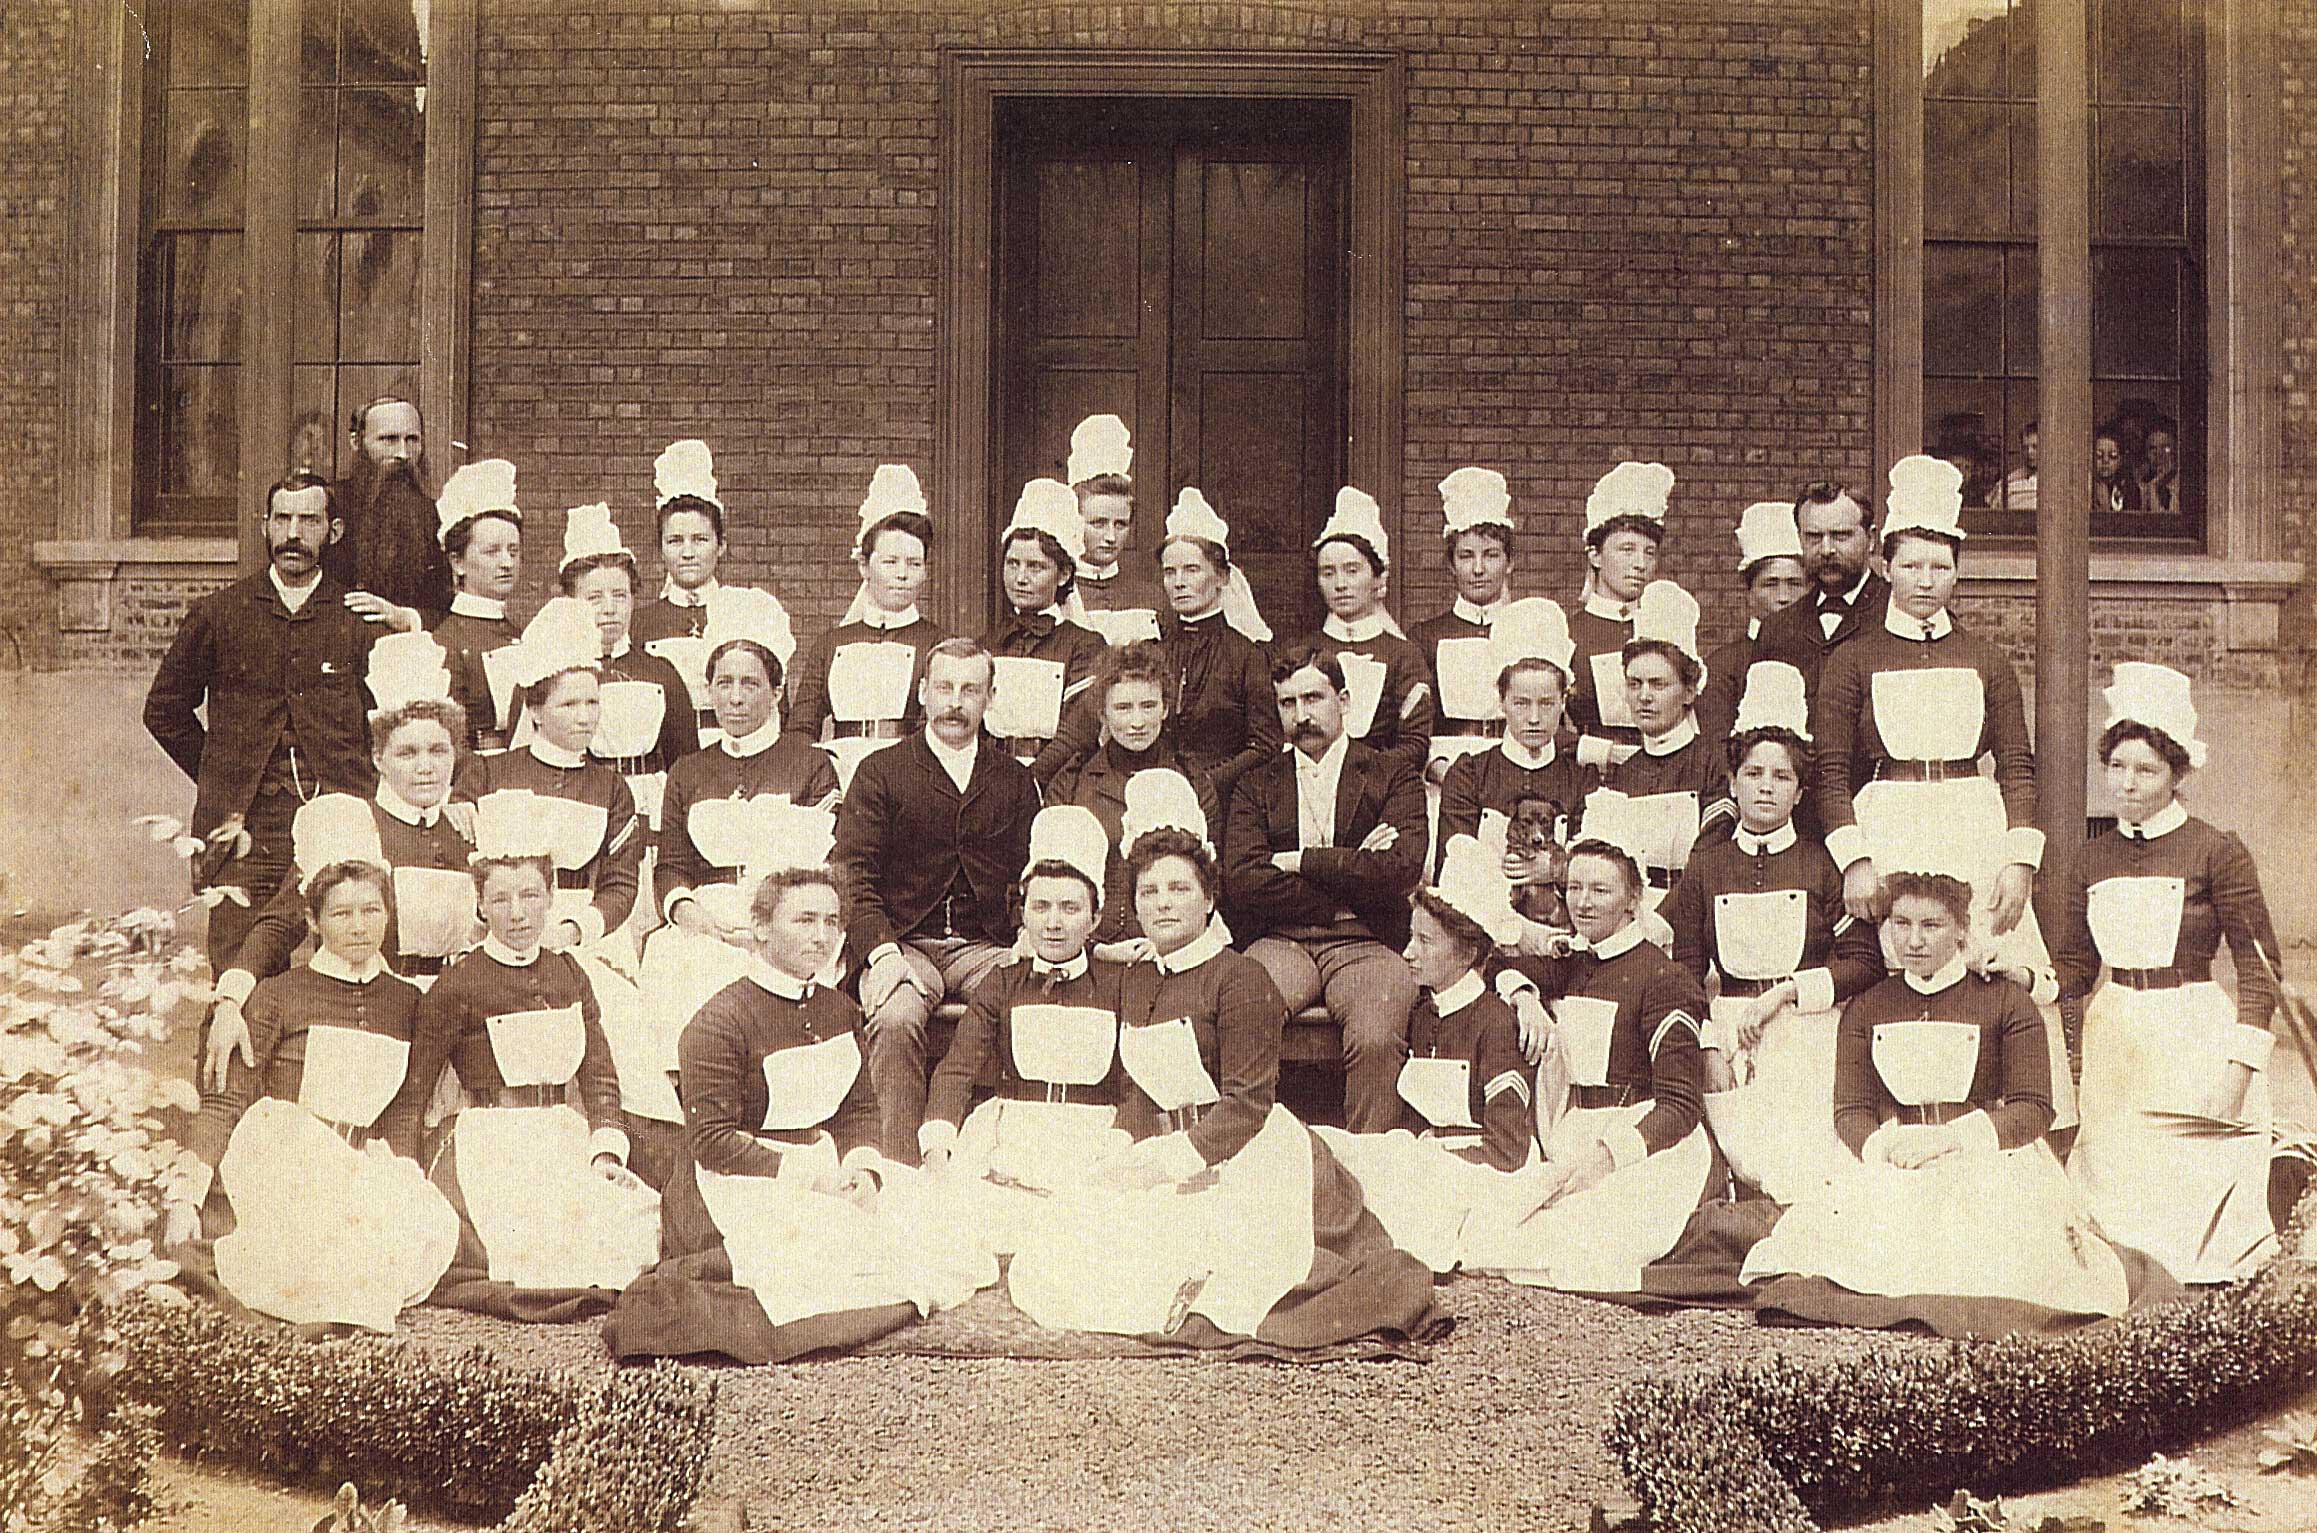 1891 staff